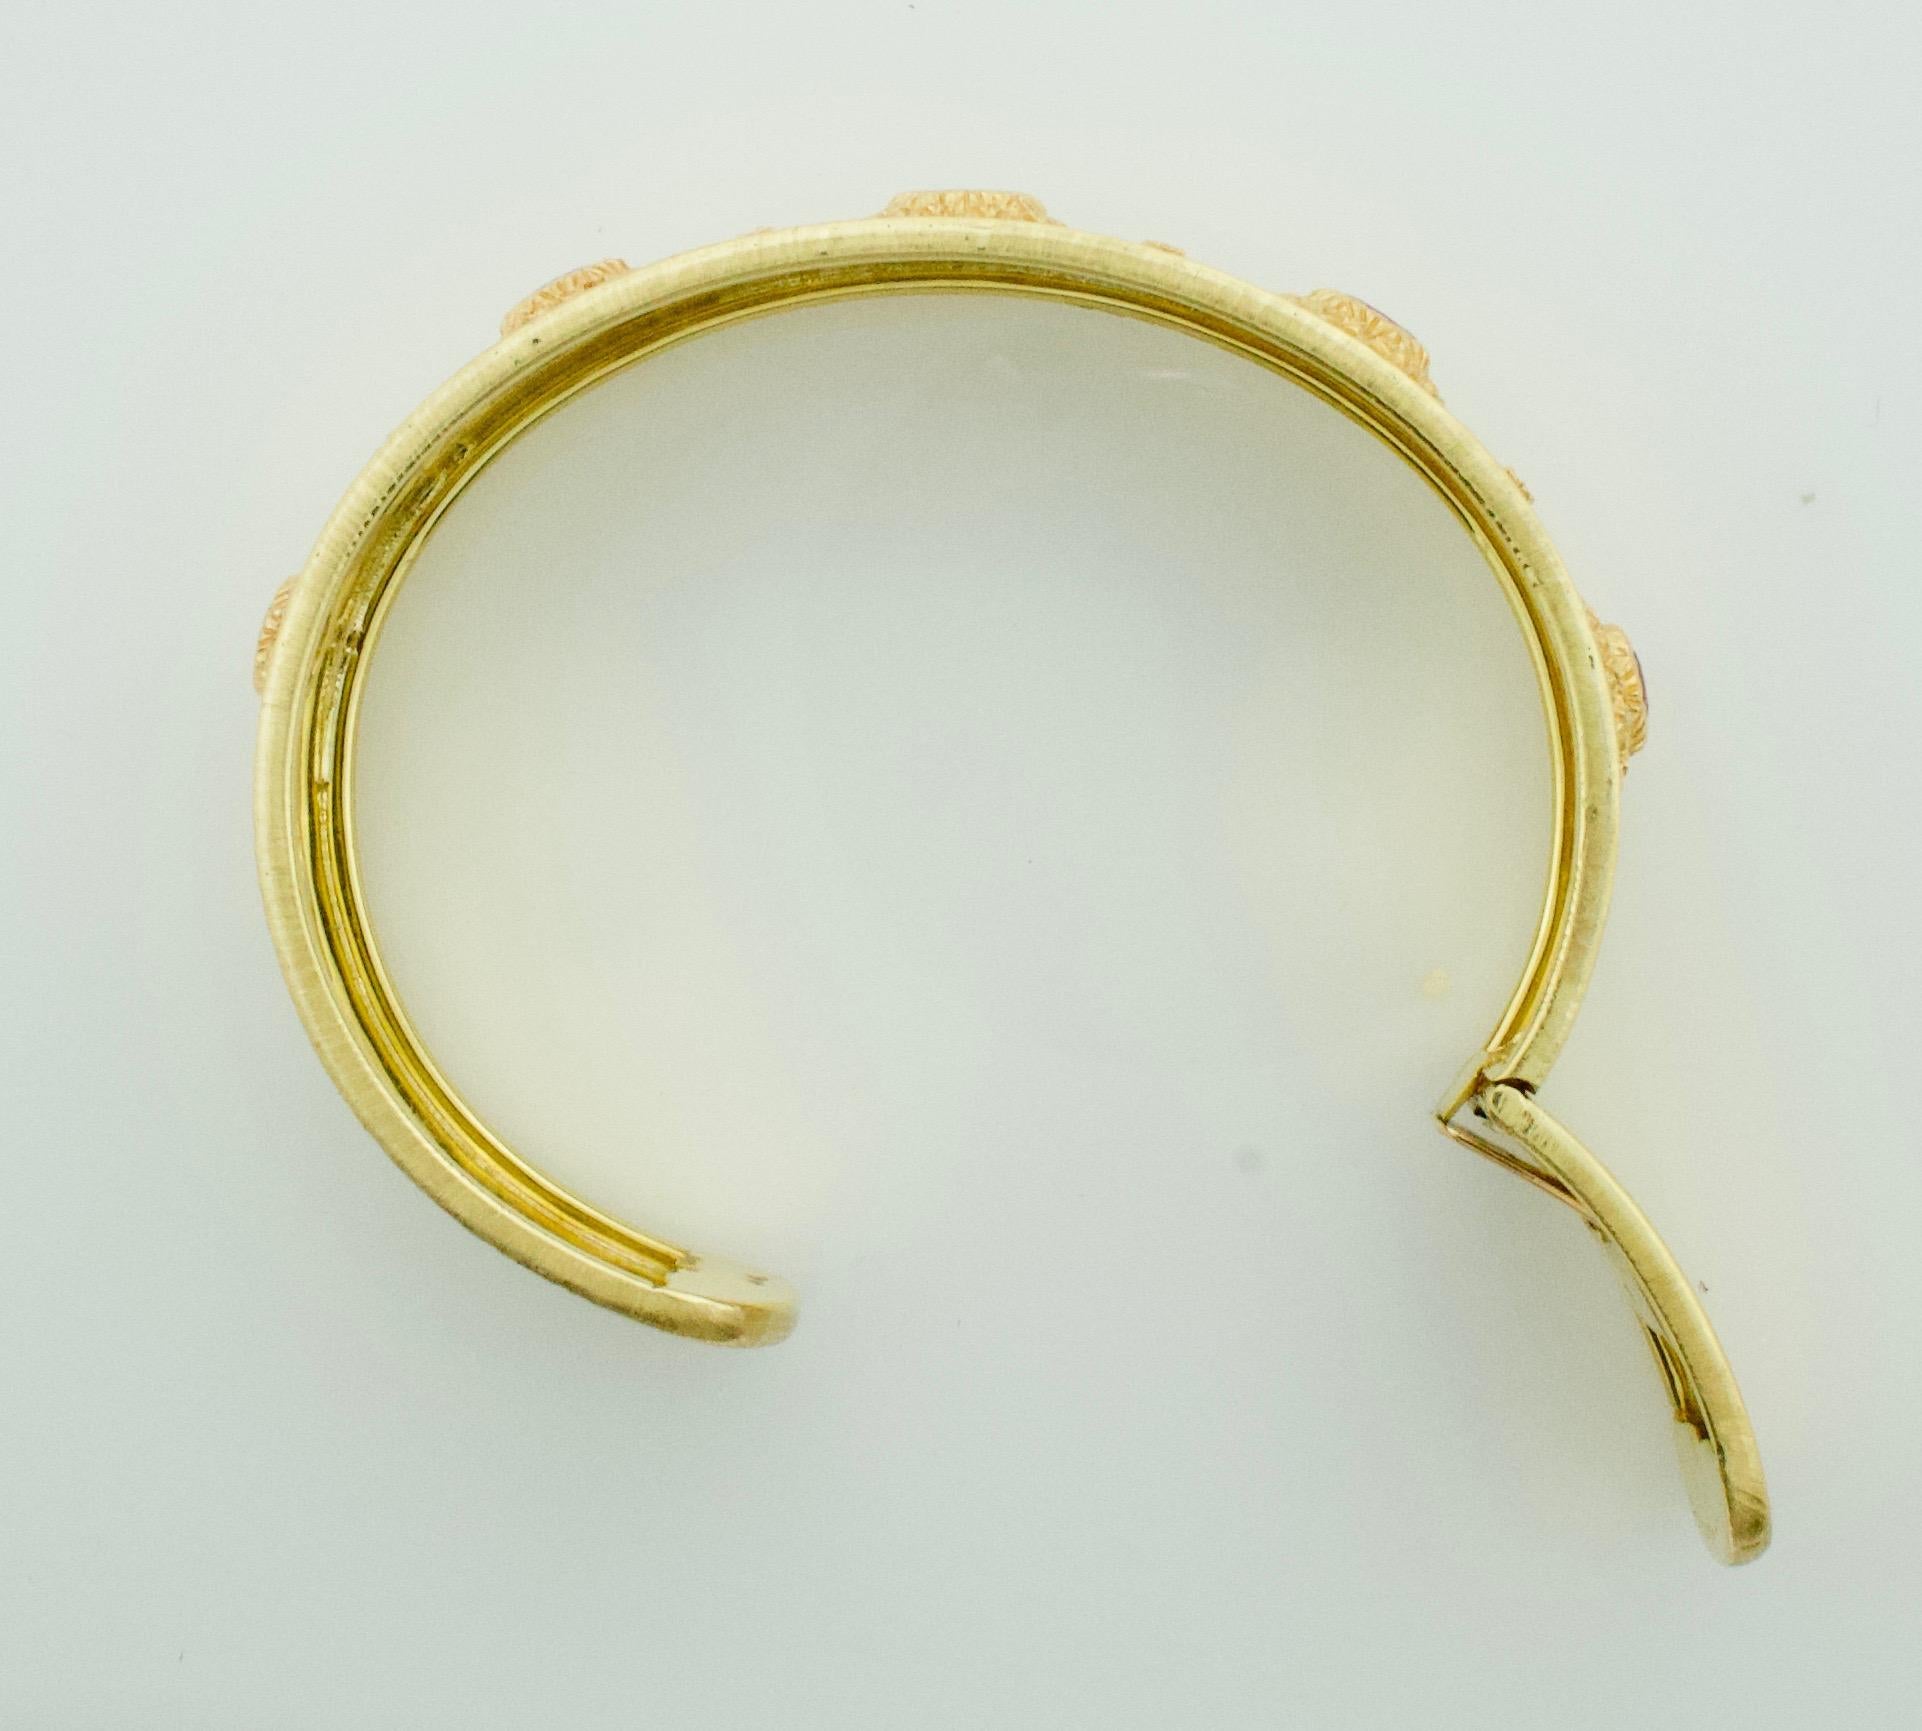 Mario Buccellati Ruby Bangle Bracelet in 18 Karat Yellow Gold 2